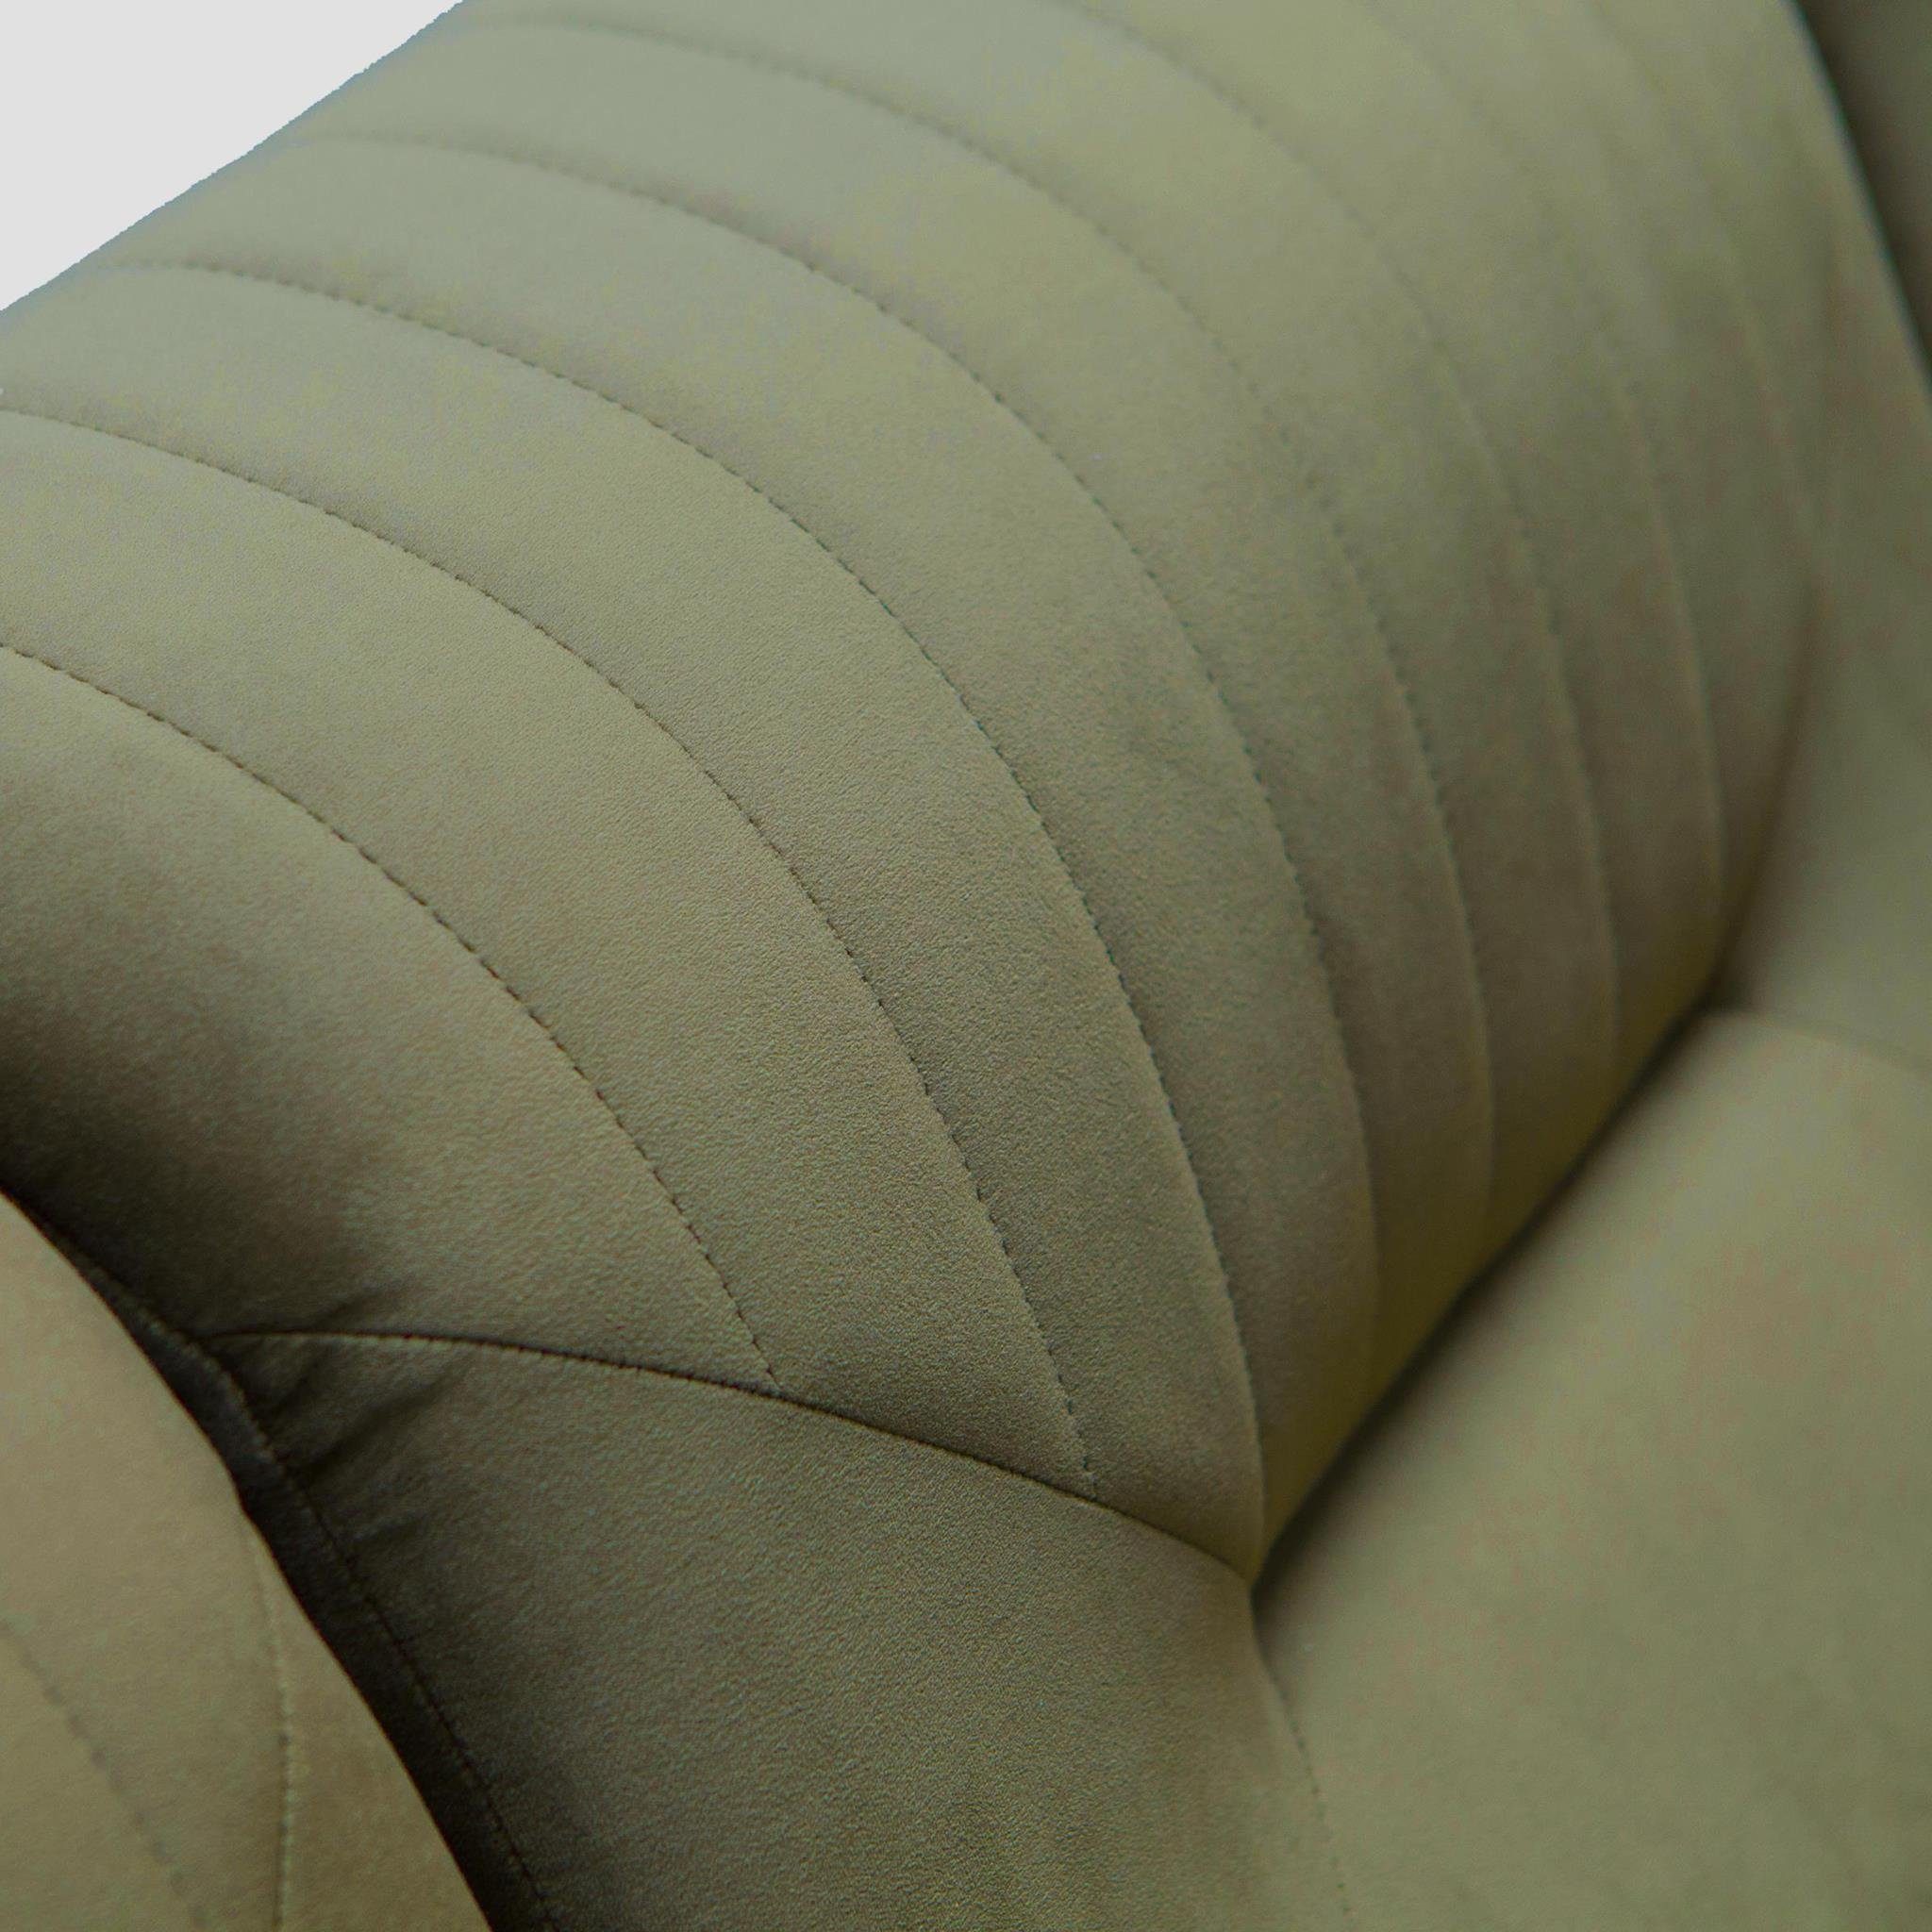 Beautysofa Polstergarnitur VENEZIA, (bluvel modernes (Sessel + 2-Sitzer 77) + Metallbeine, 3-Sitzer im Grün mit Sofa Design), aus Sofa Couchgarnituren Velours